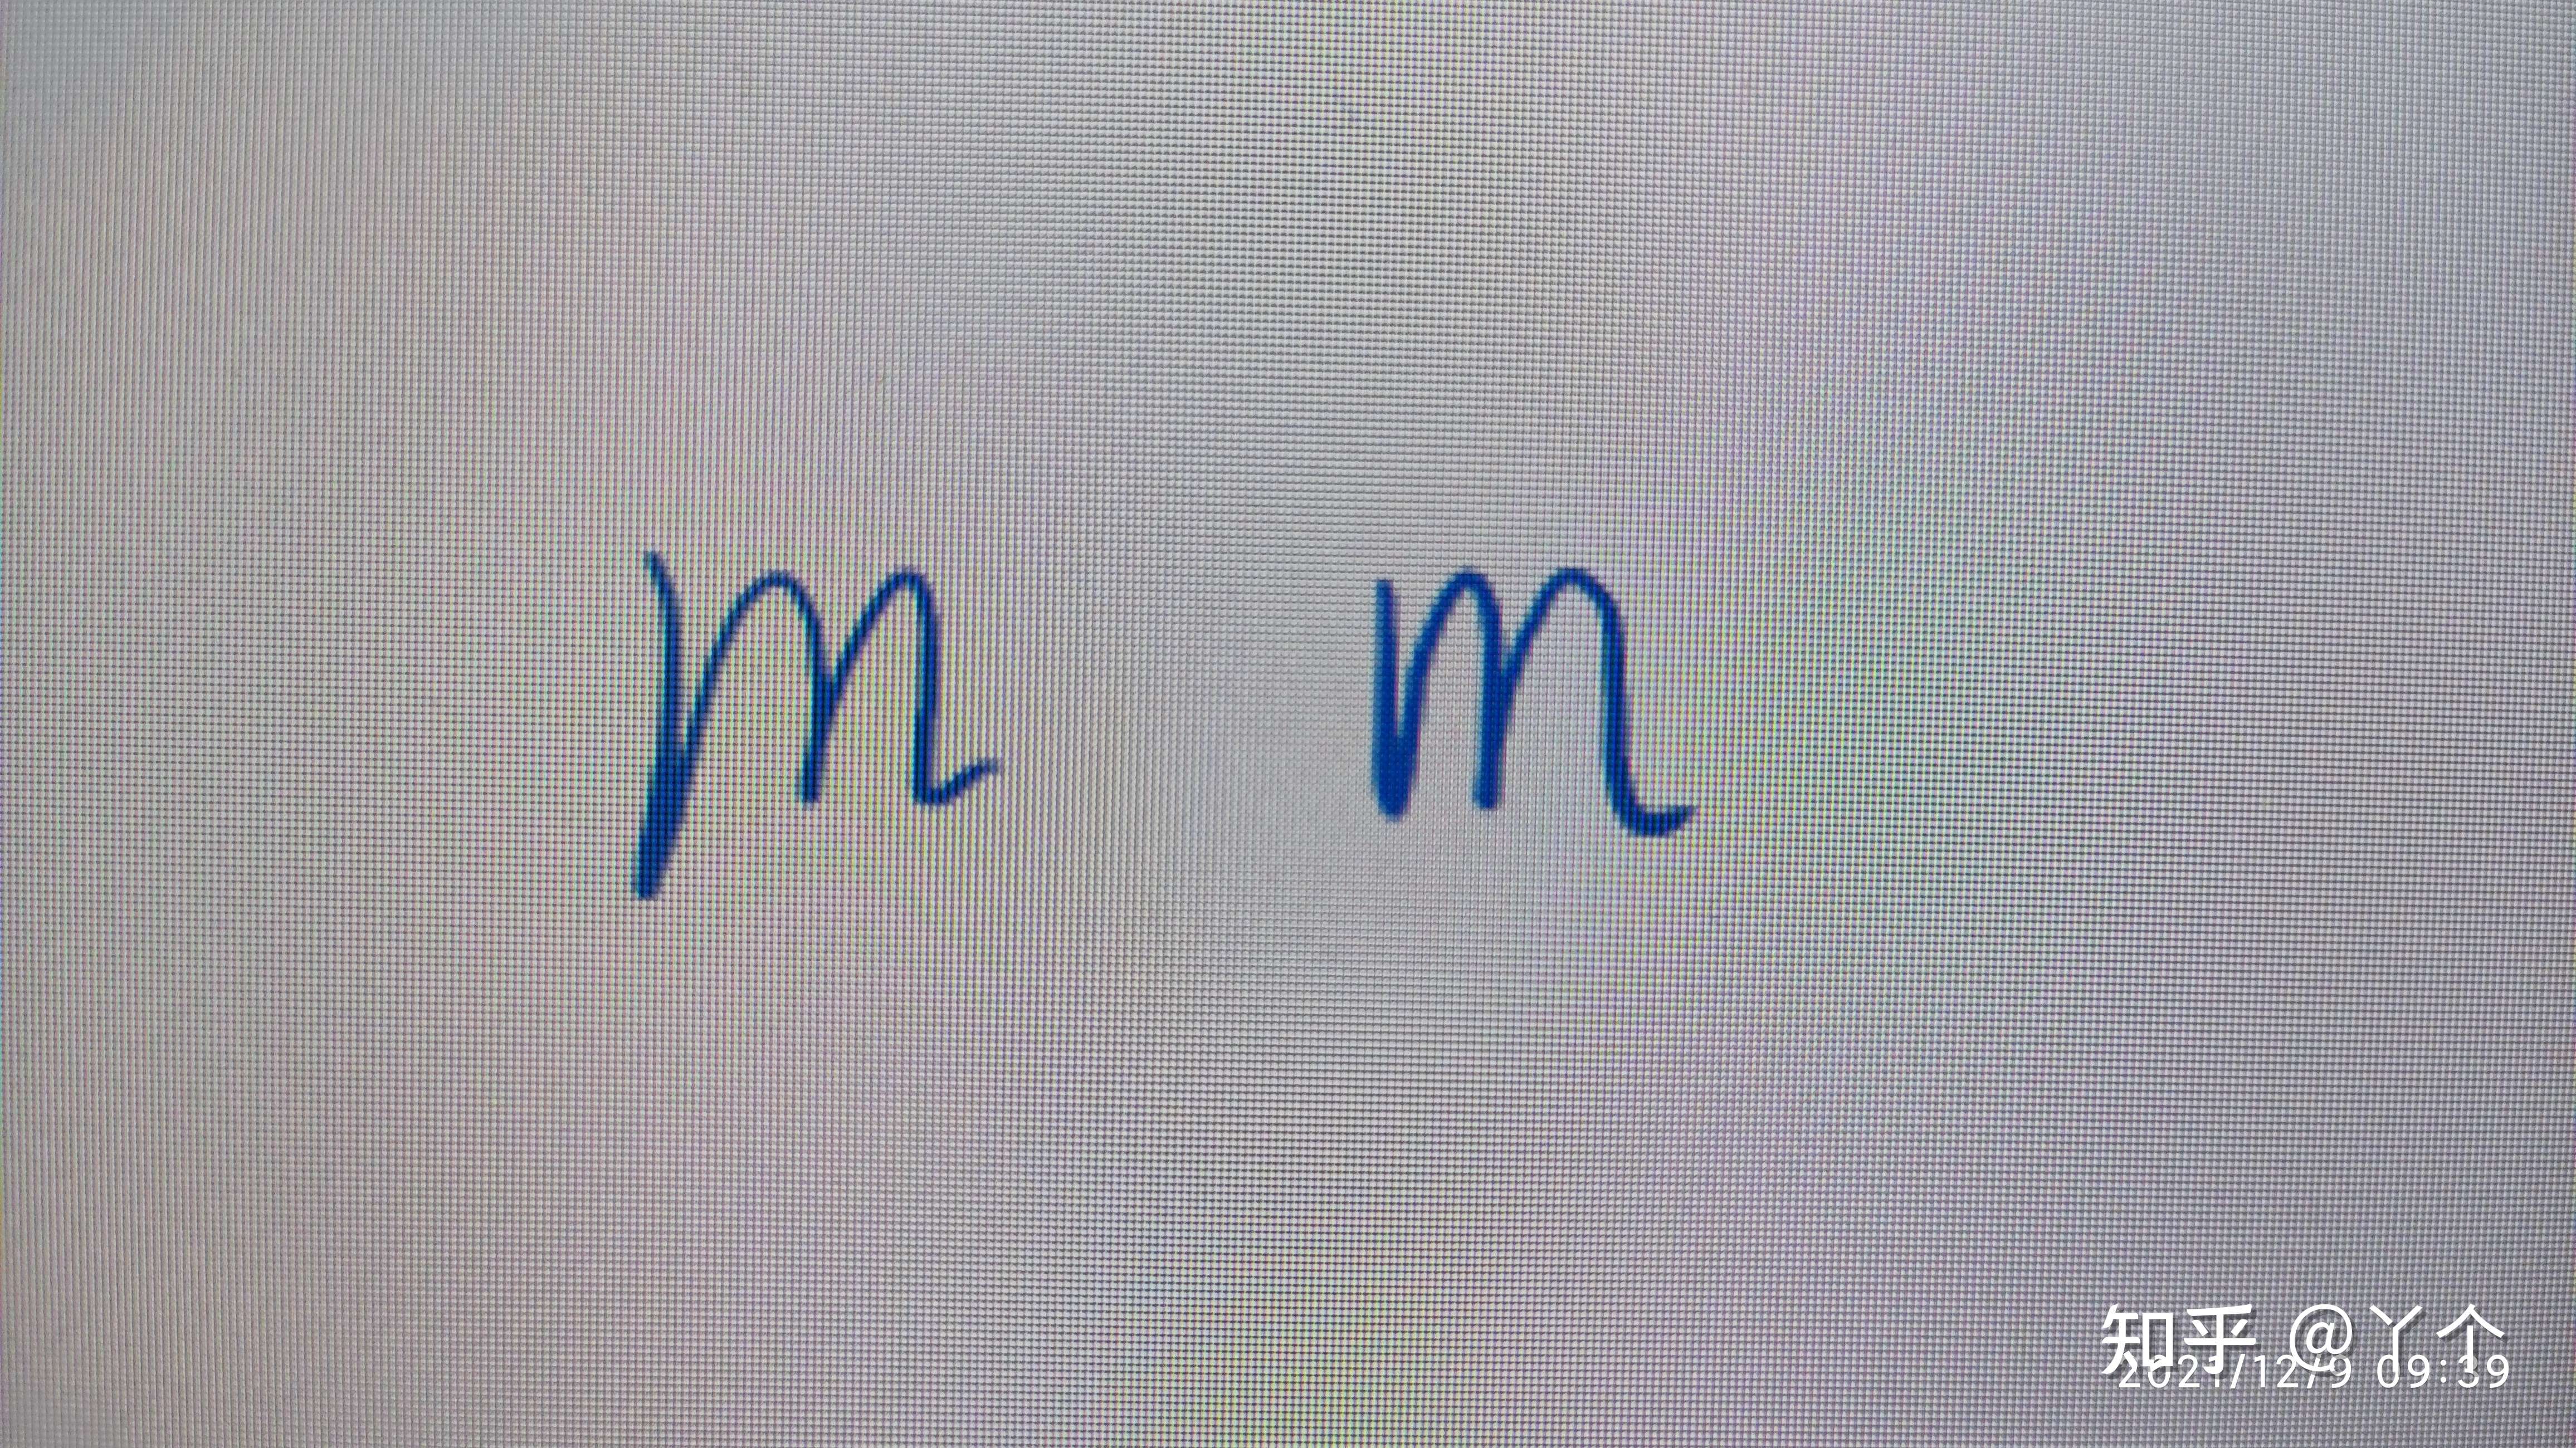 丫个 的想法: 左边m的写法,体现出着急结束的心态 